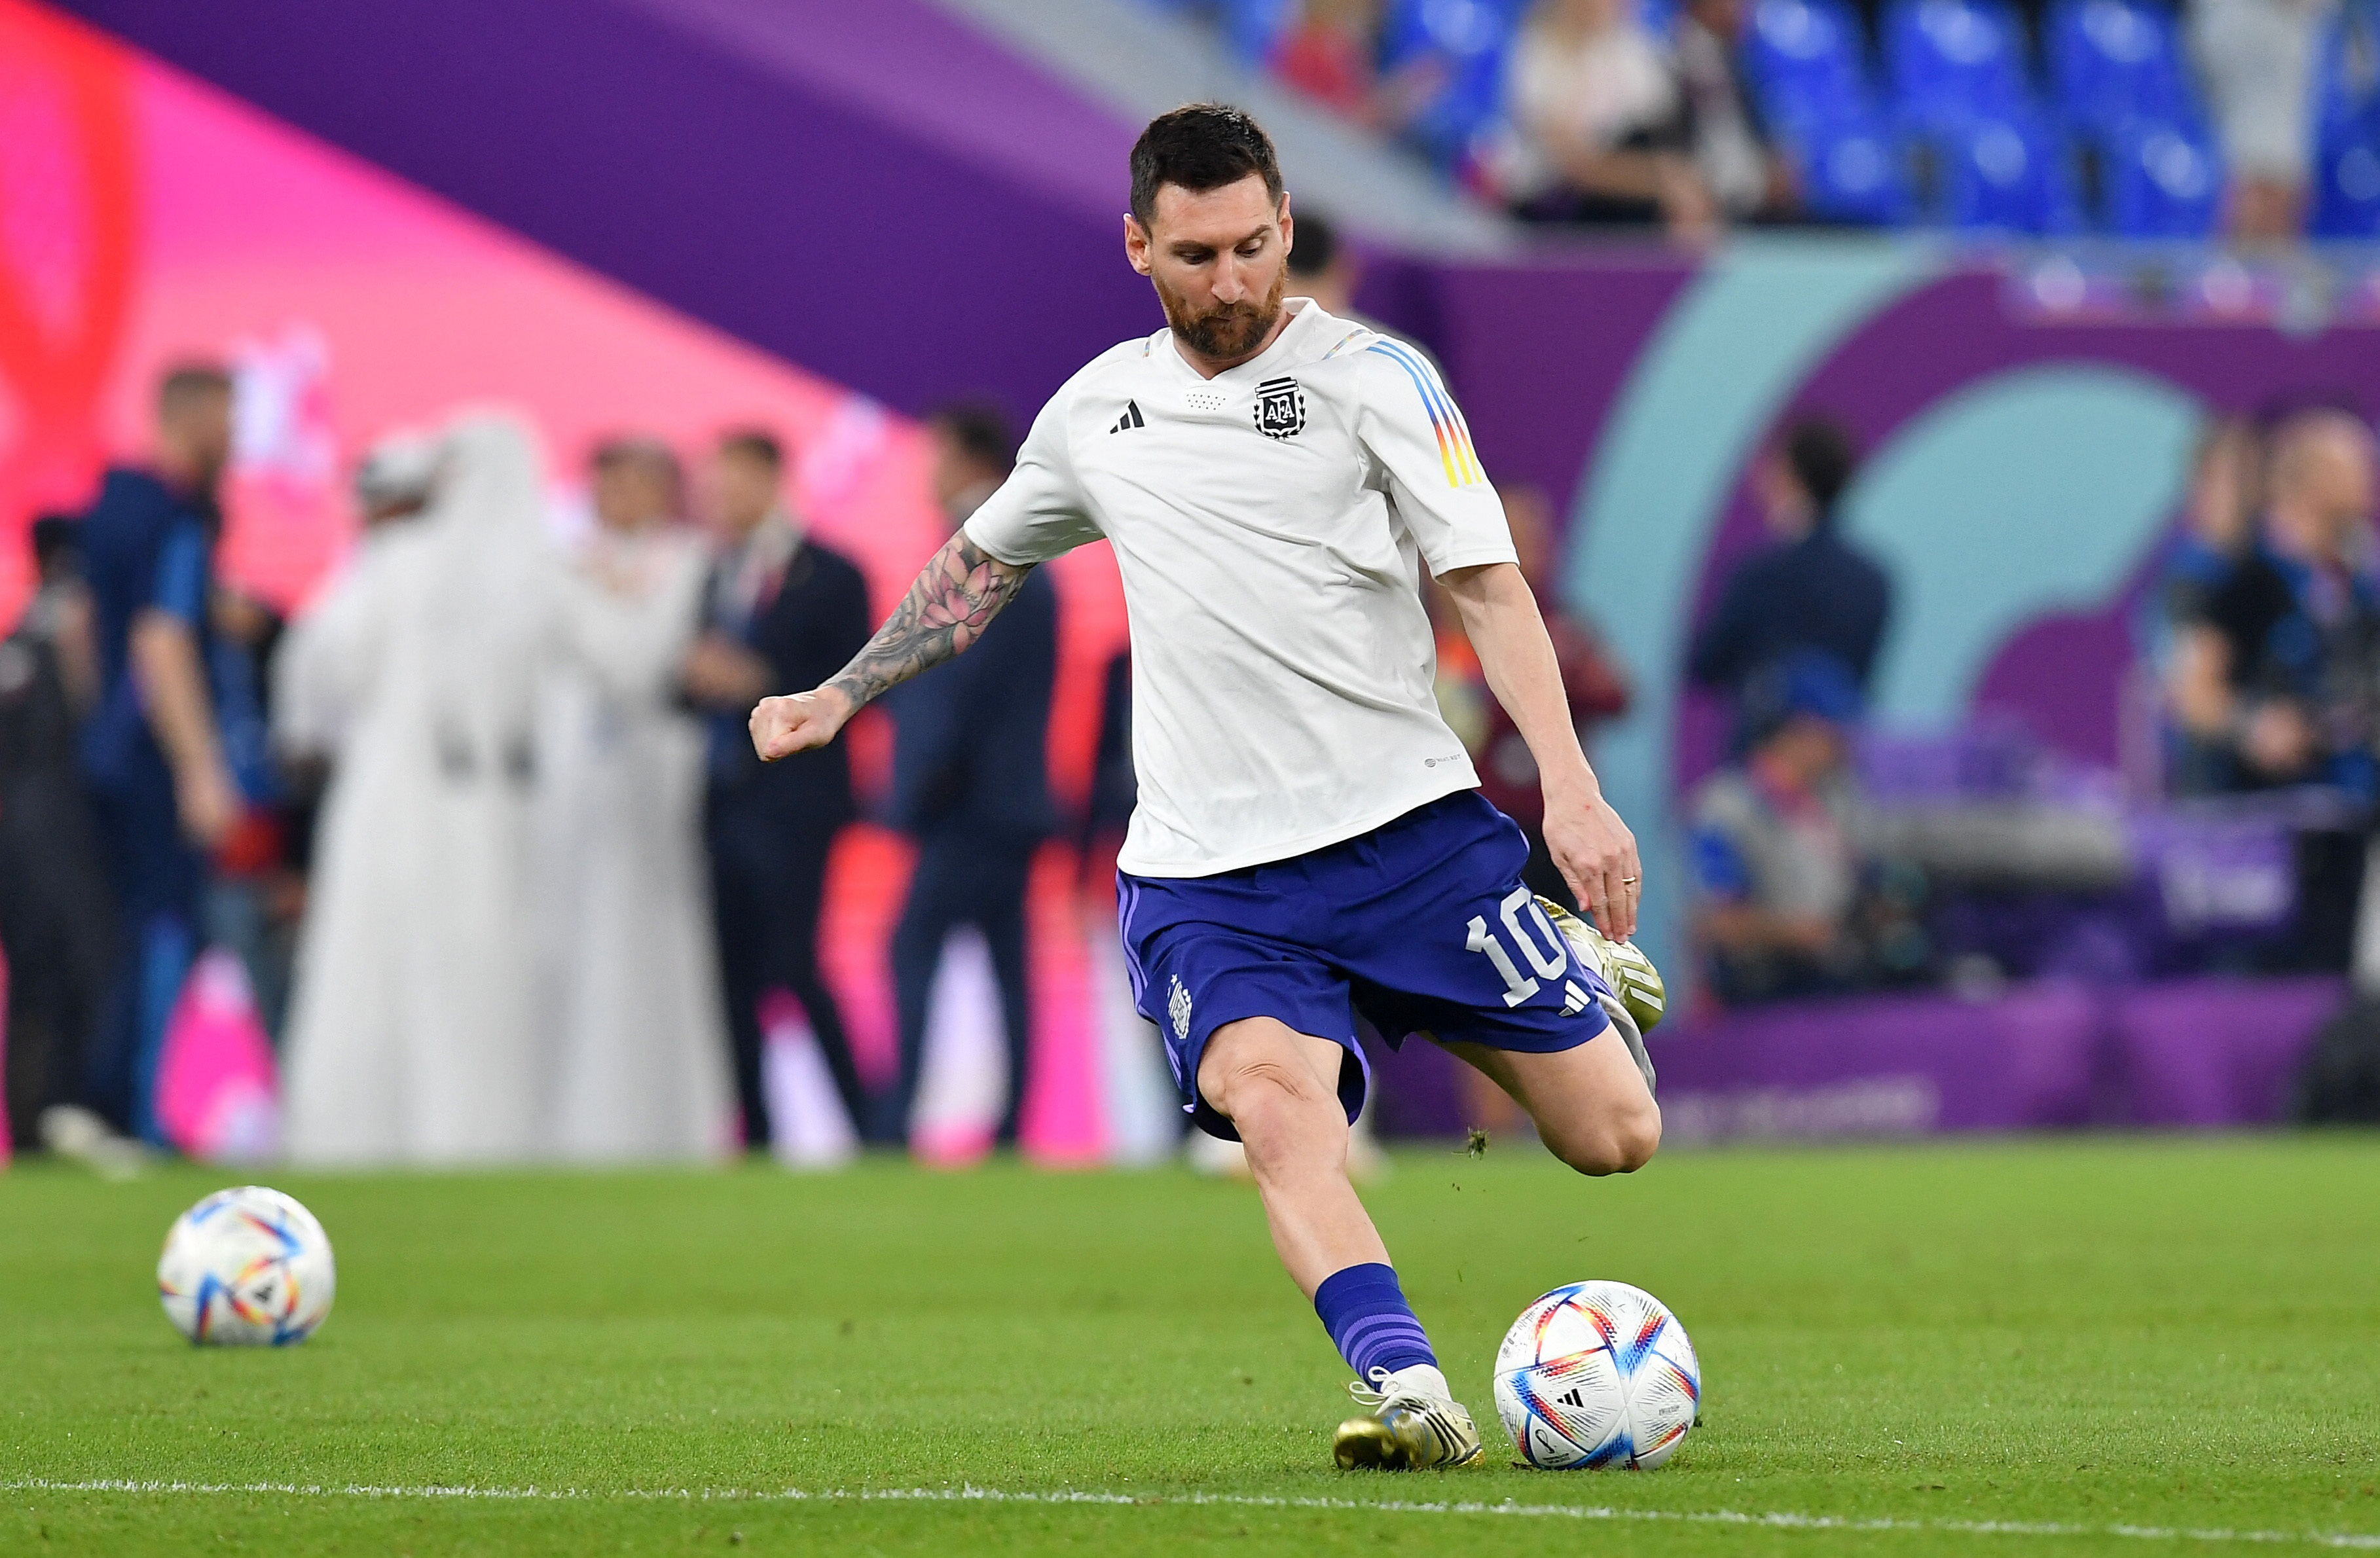 El detalle que lleva Messi en sus botines para el partido clave ante Polonia: “Que la magia suceda”